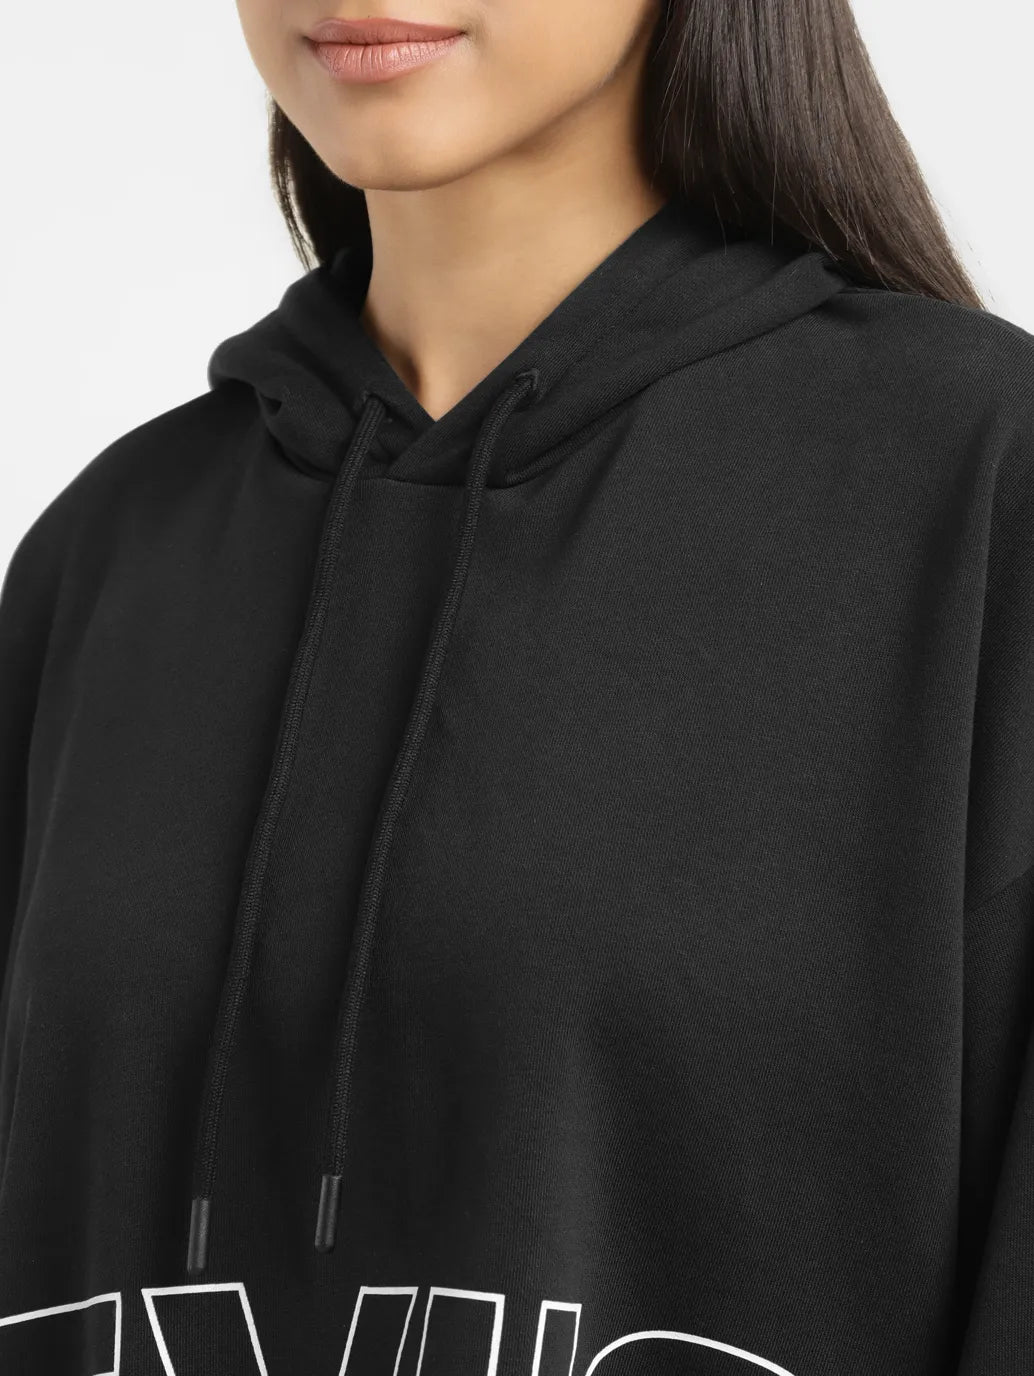 Women's Brand Logo Black And White Hooded Sweatshirt